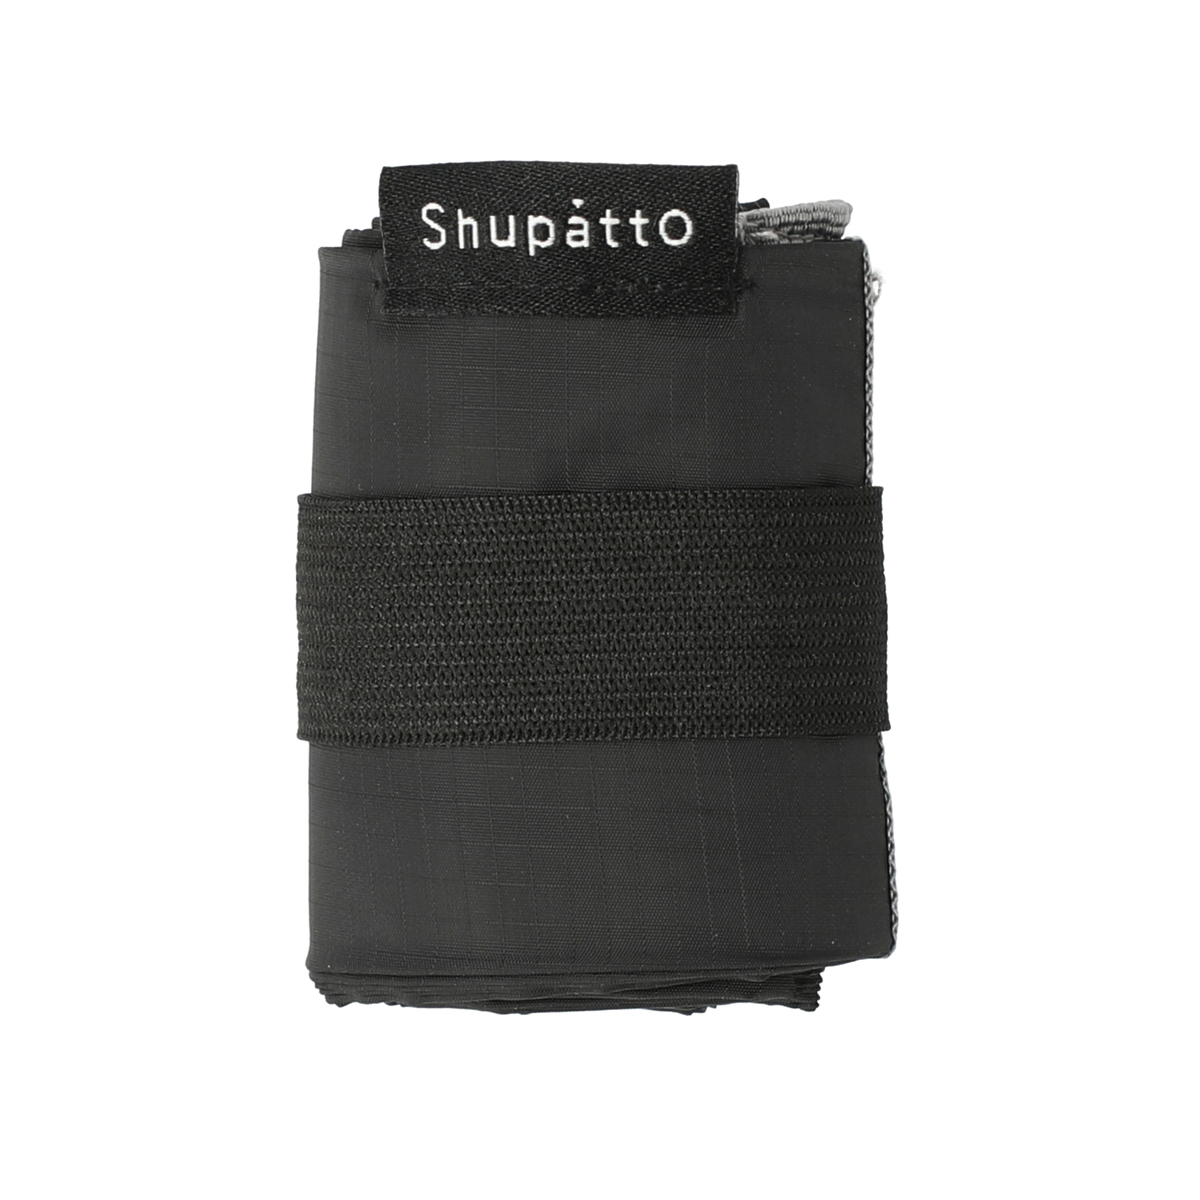  コンパクトバッグ 「Shupatto」 Sサイズ  ブラック